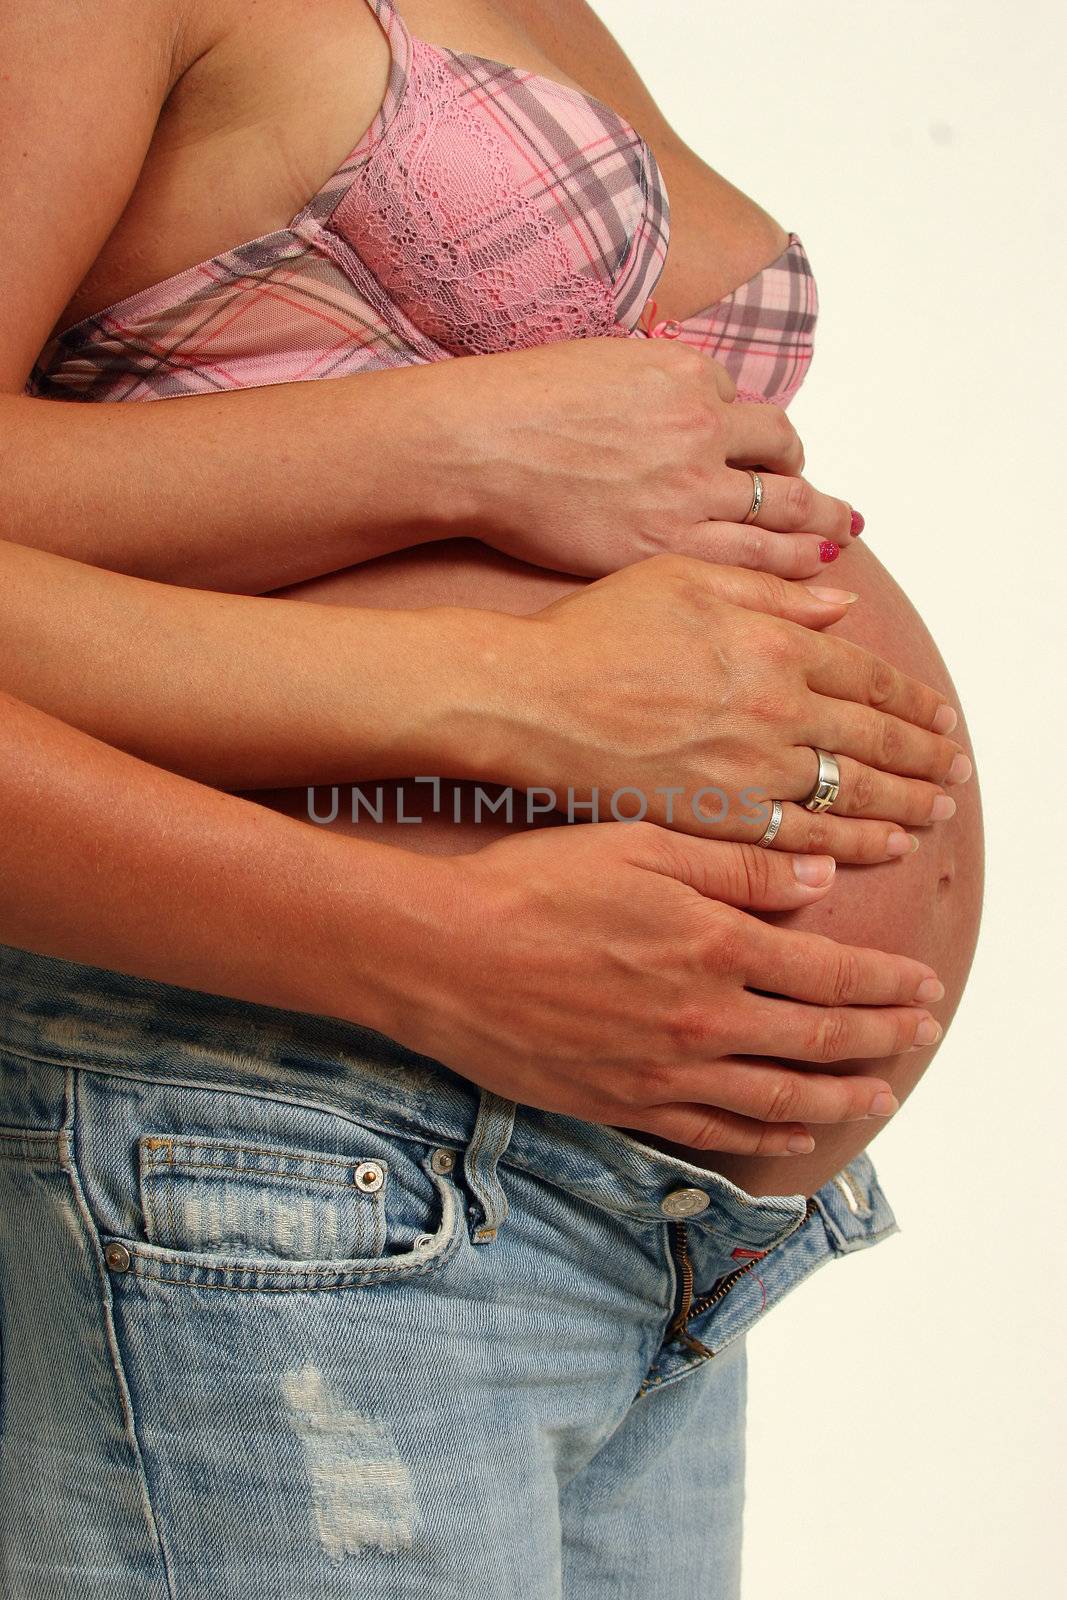 Pregnant womens by bezkofeina